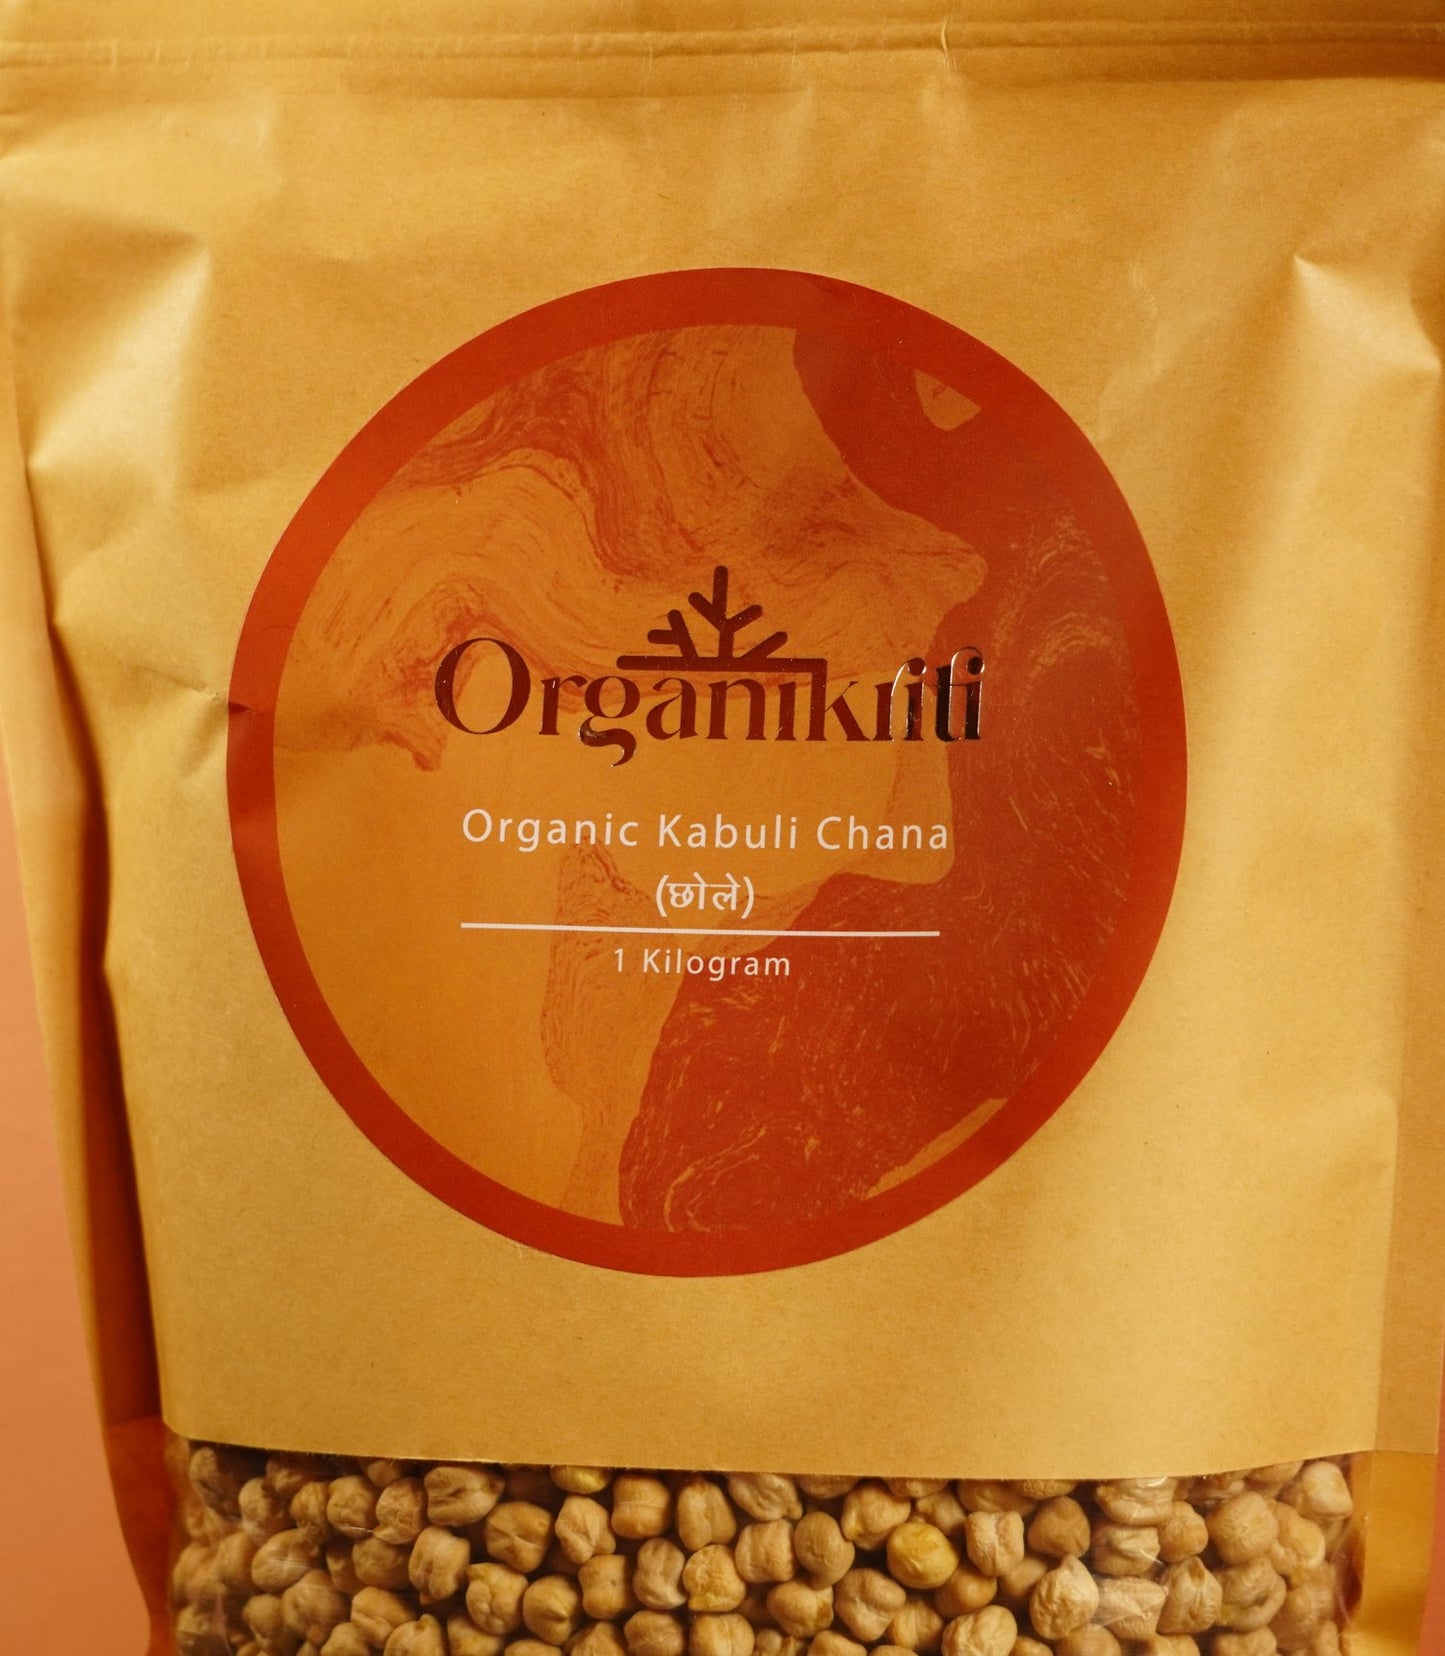 Organic Kabuli Chana / Chickpeas